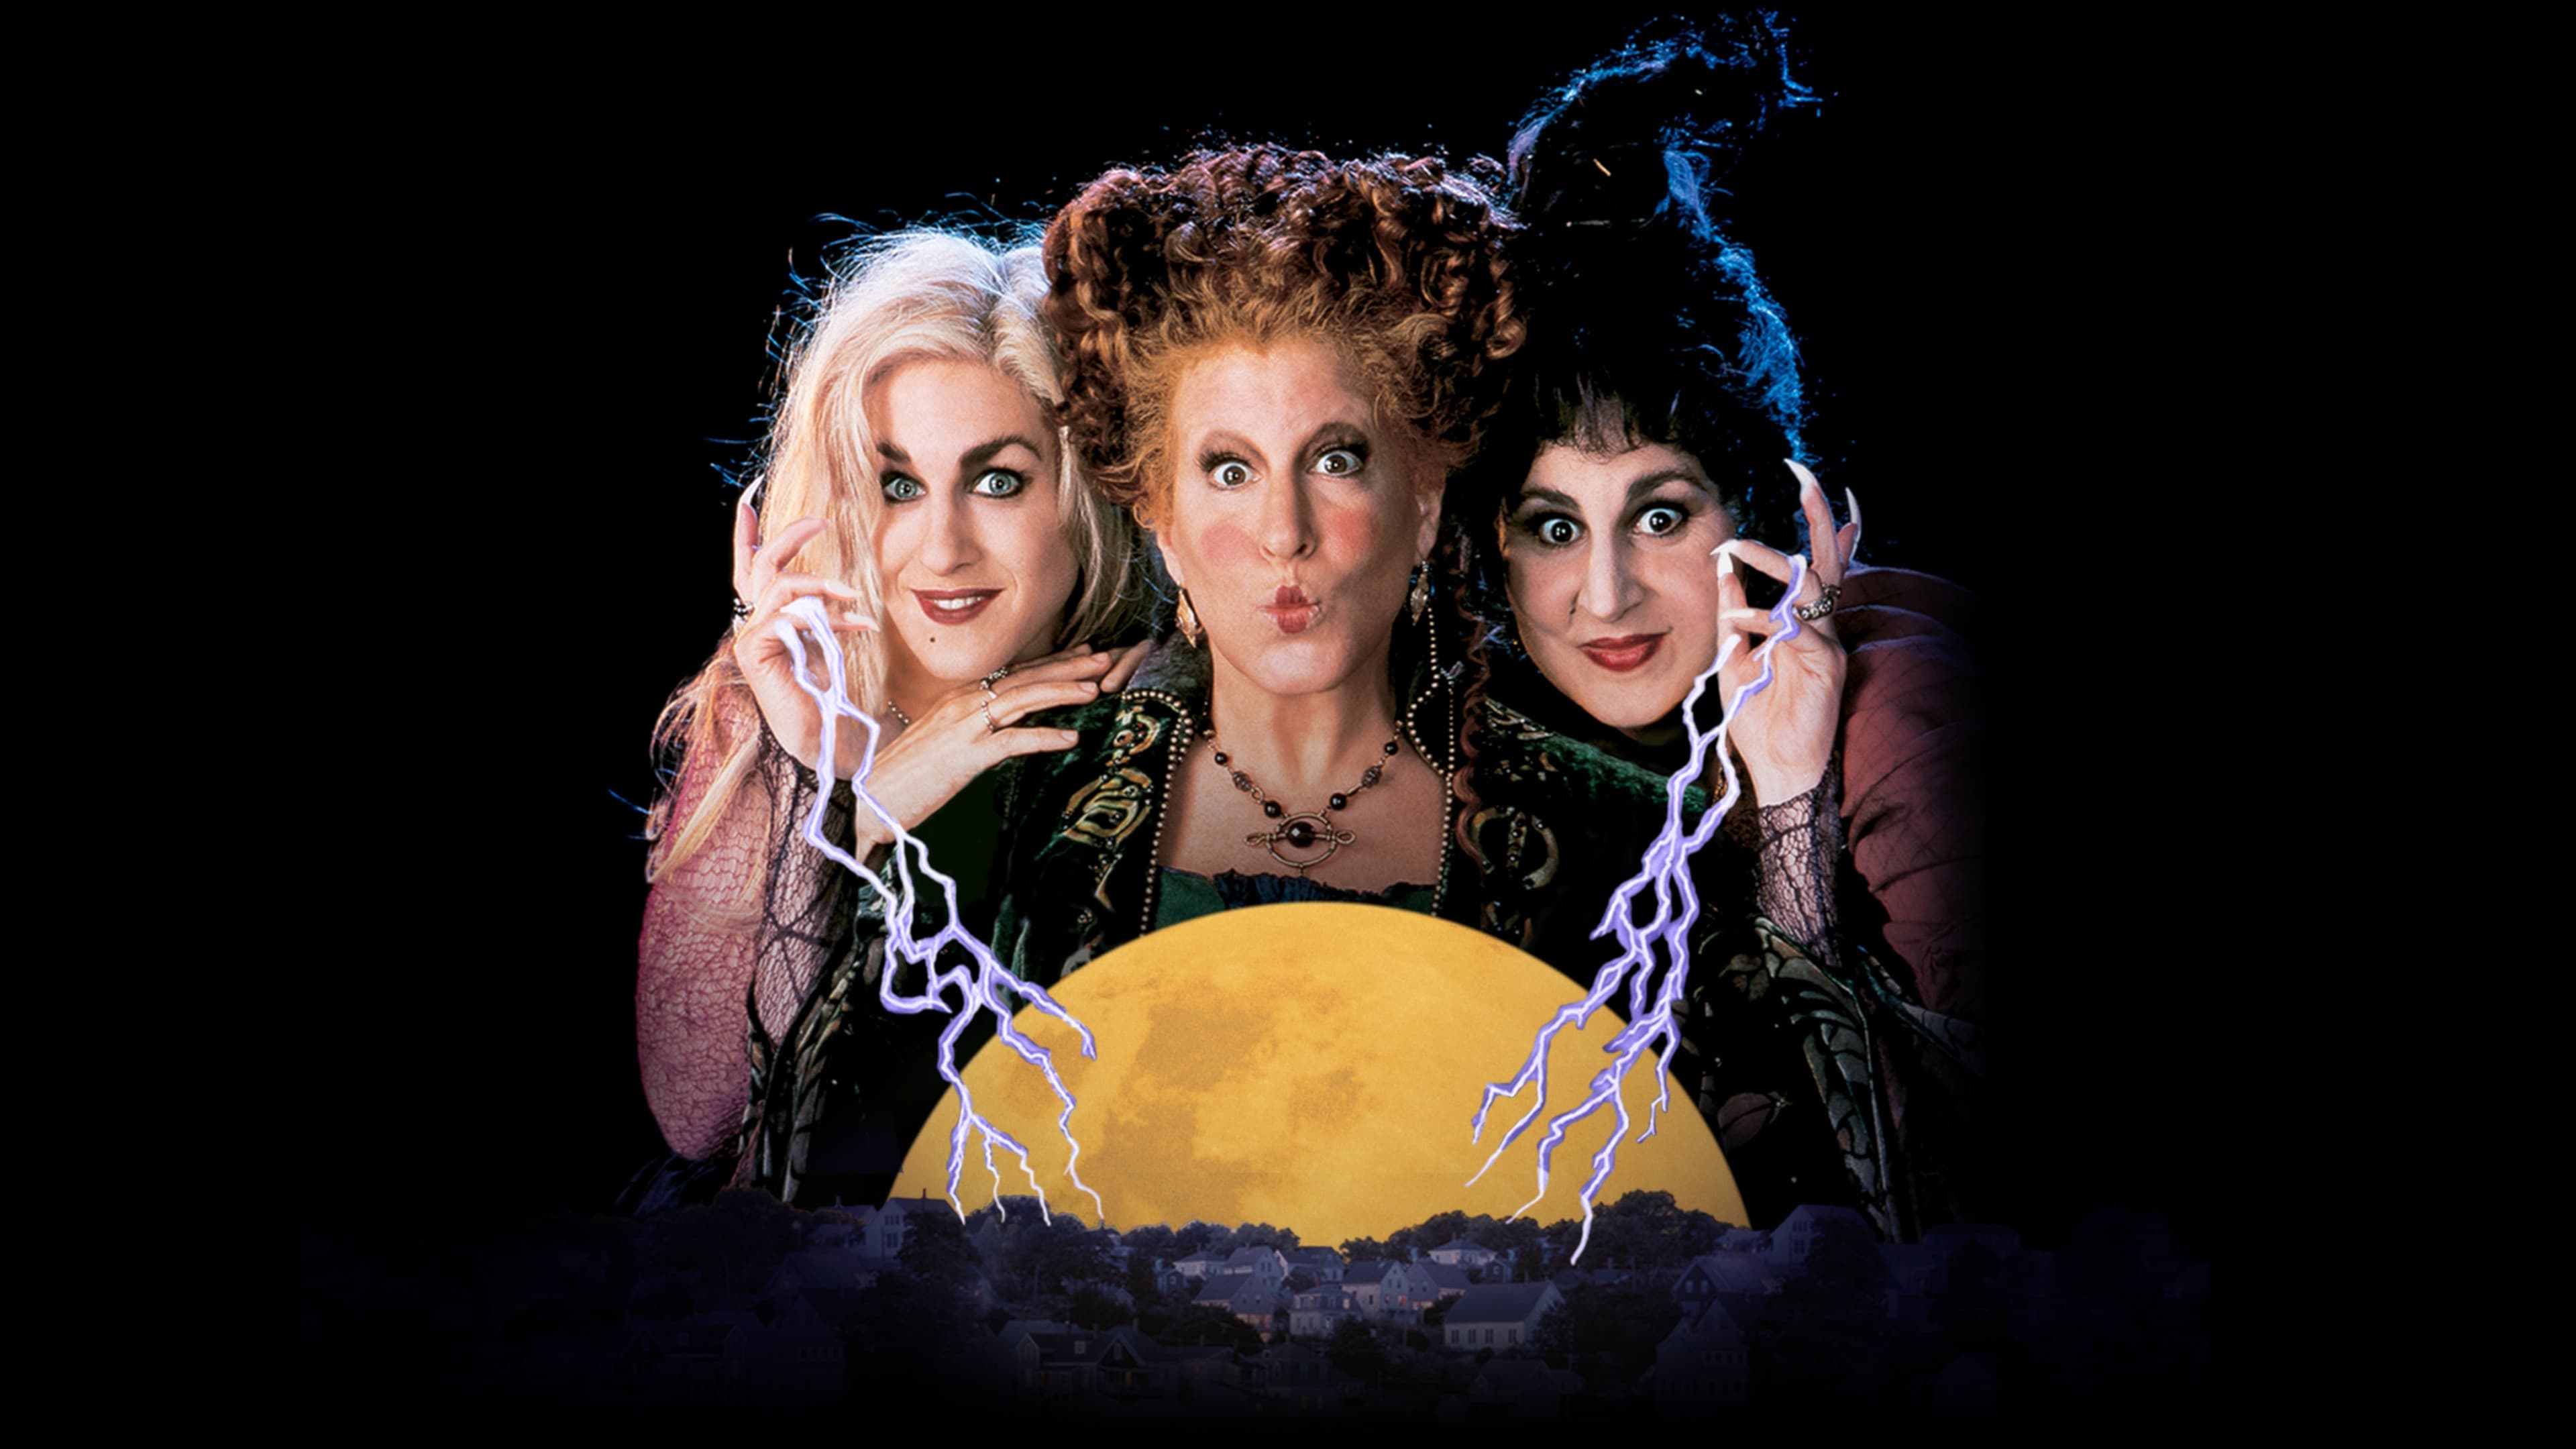 Três Bruxas Loucas (1993)